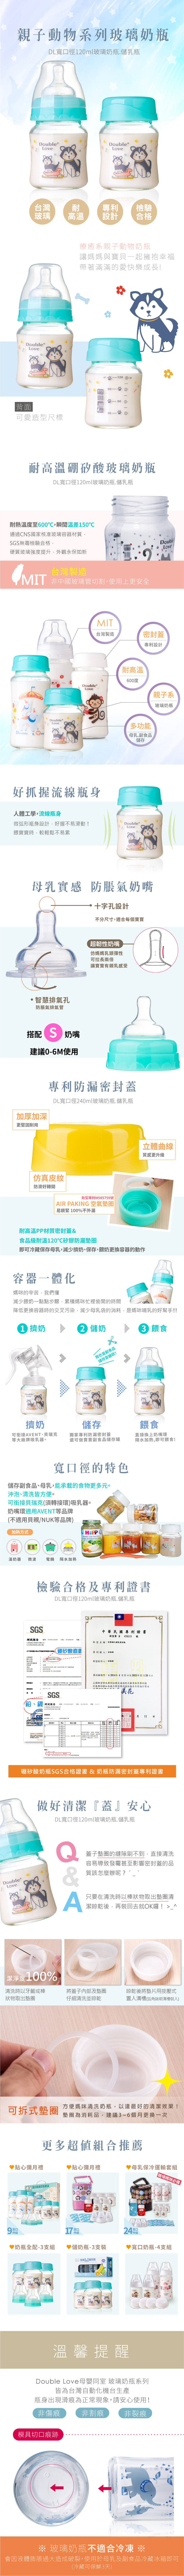 台灣玻璃奶瓶三件組一瓶雙蓋寬口玻璃奶瓶/母乳儲存瓶兩用 防脹氣奶嘴【A10079】